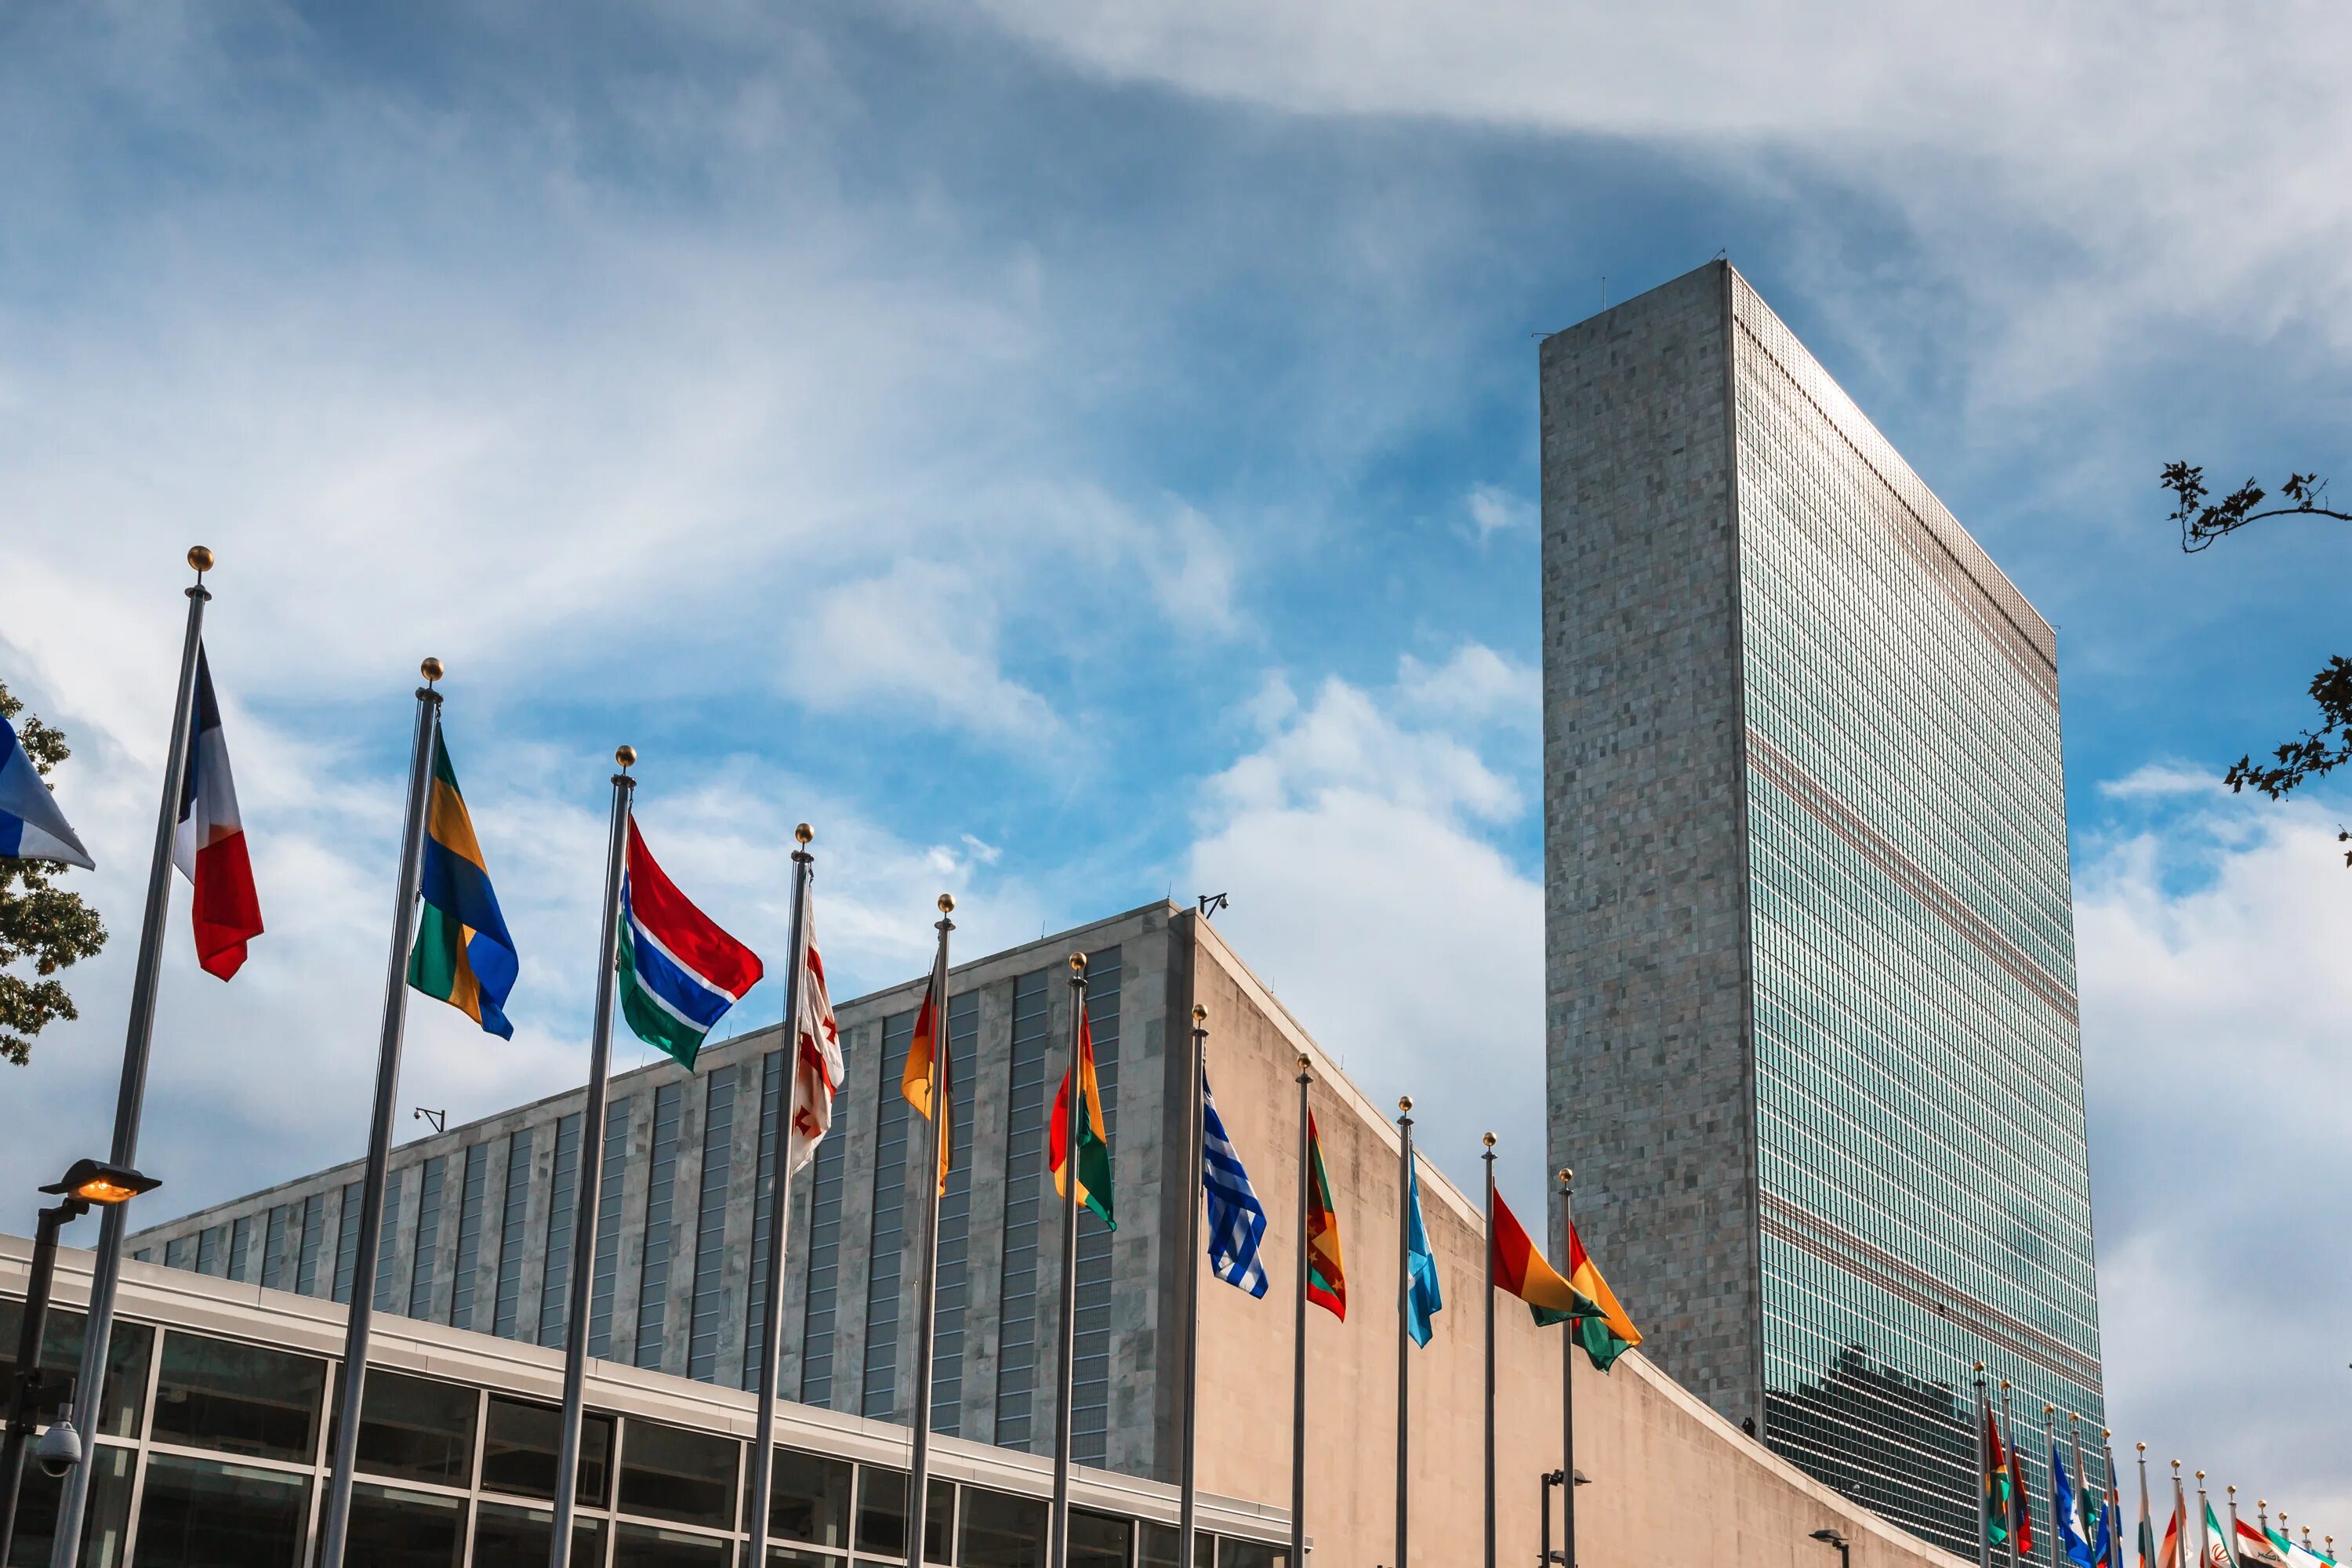 Город штаб оон. Штаб-квартира ООН В Нью-Йорке. Здание ООН В Нью-Йорке. Здание ООН В Нью-Йорке флаги. Здание ООН В Нью-Йорке фото.